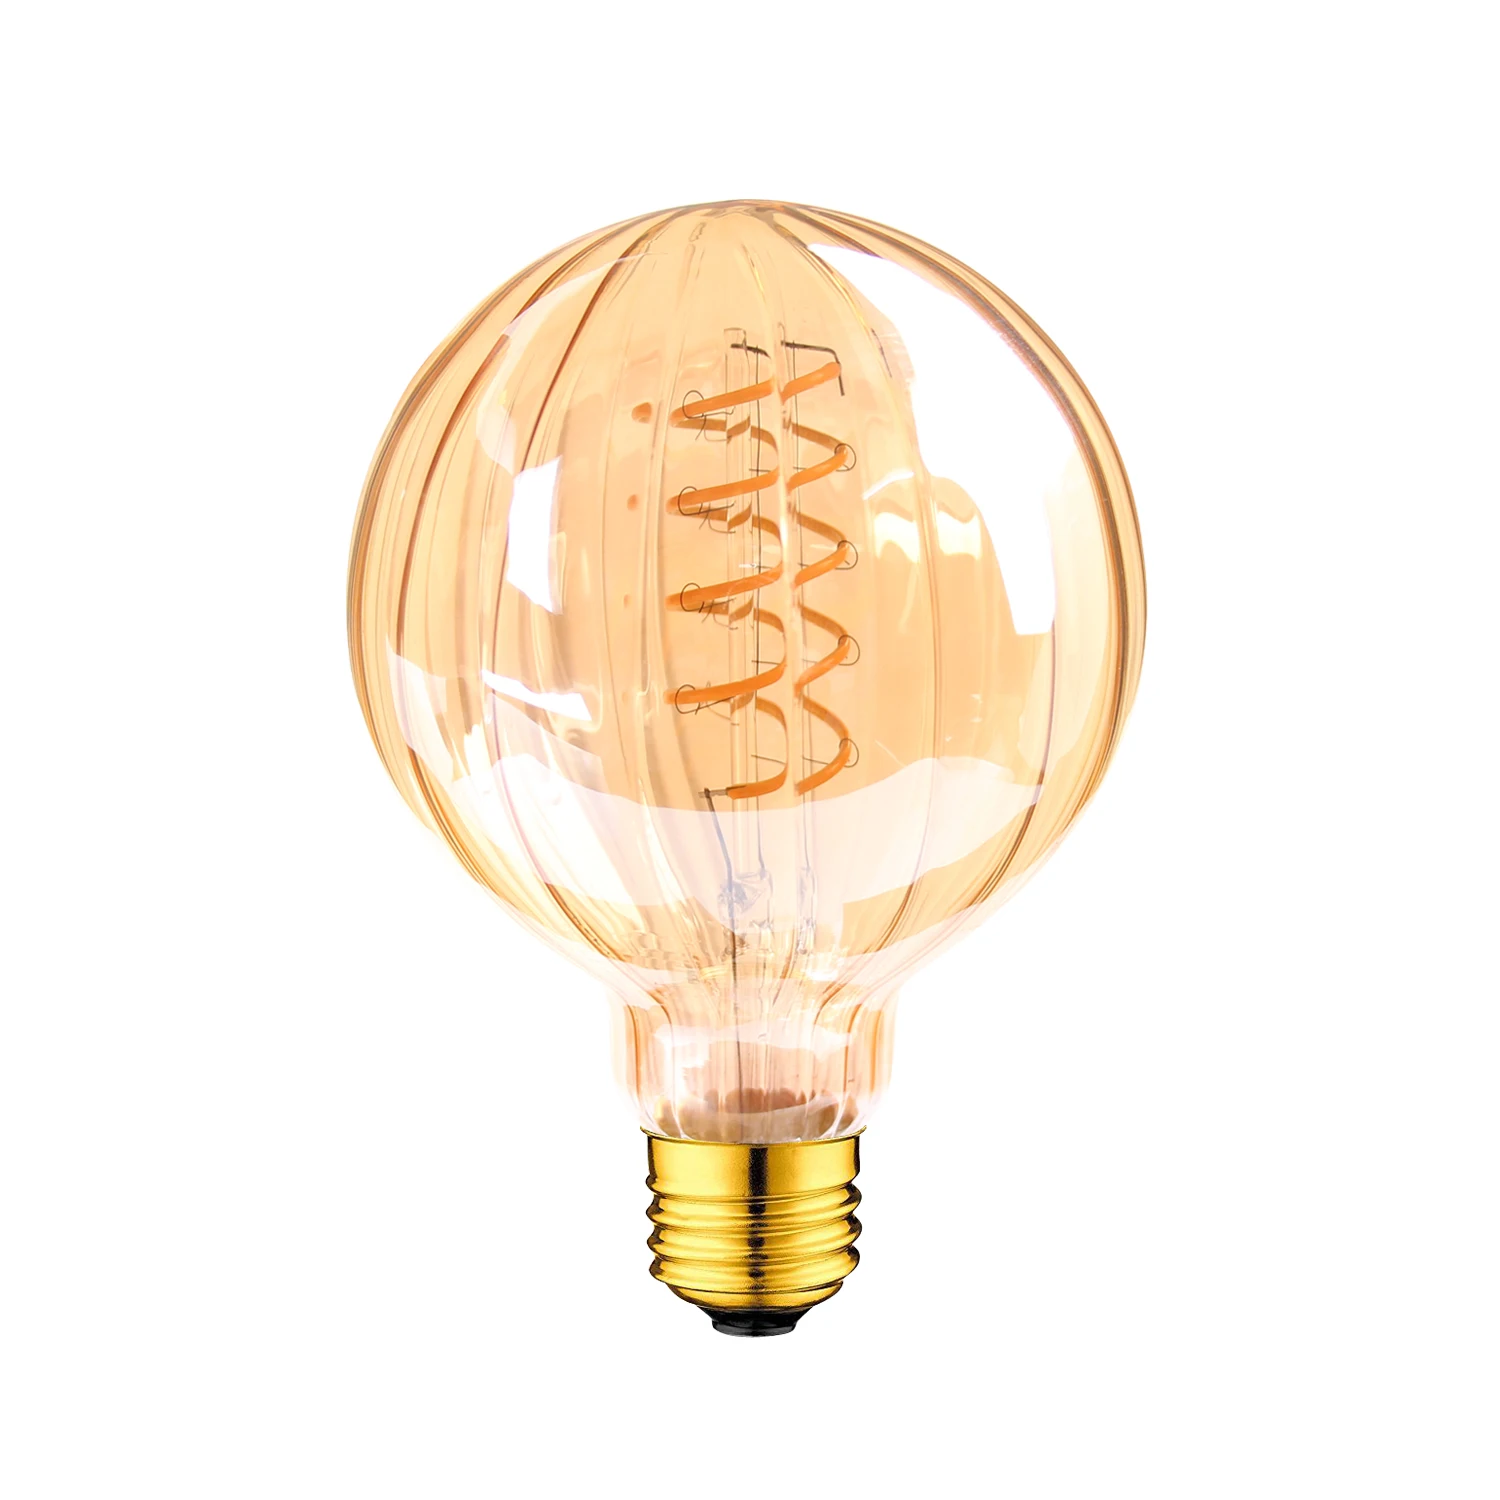 GANRILAND E14 E27 светодиодные лампы 110 V-240 V светодиодная нить с регулируемой яркостью света лампы Ультра теплый 2200 K золото Edison спираль